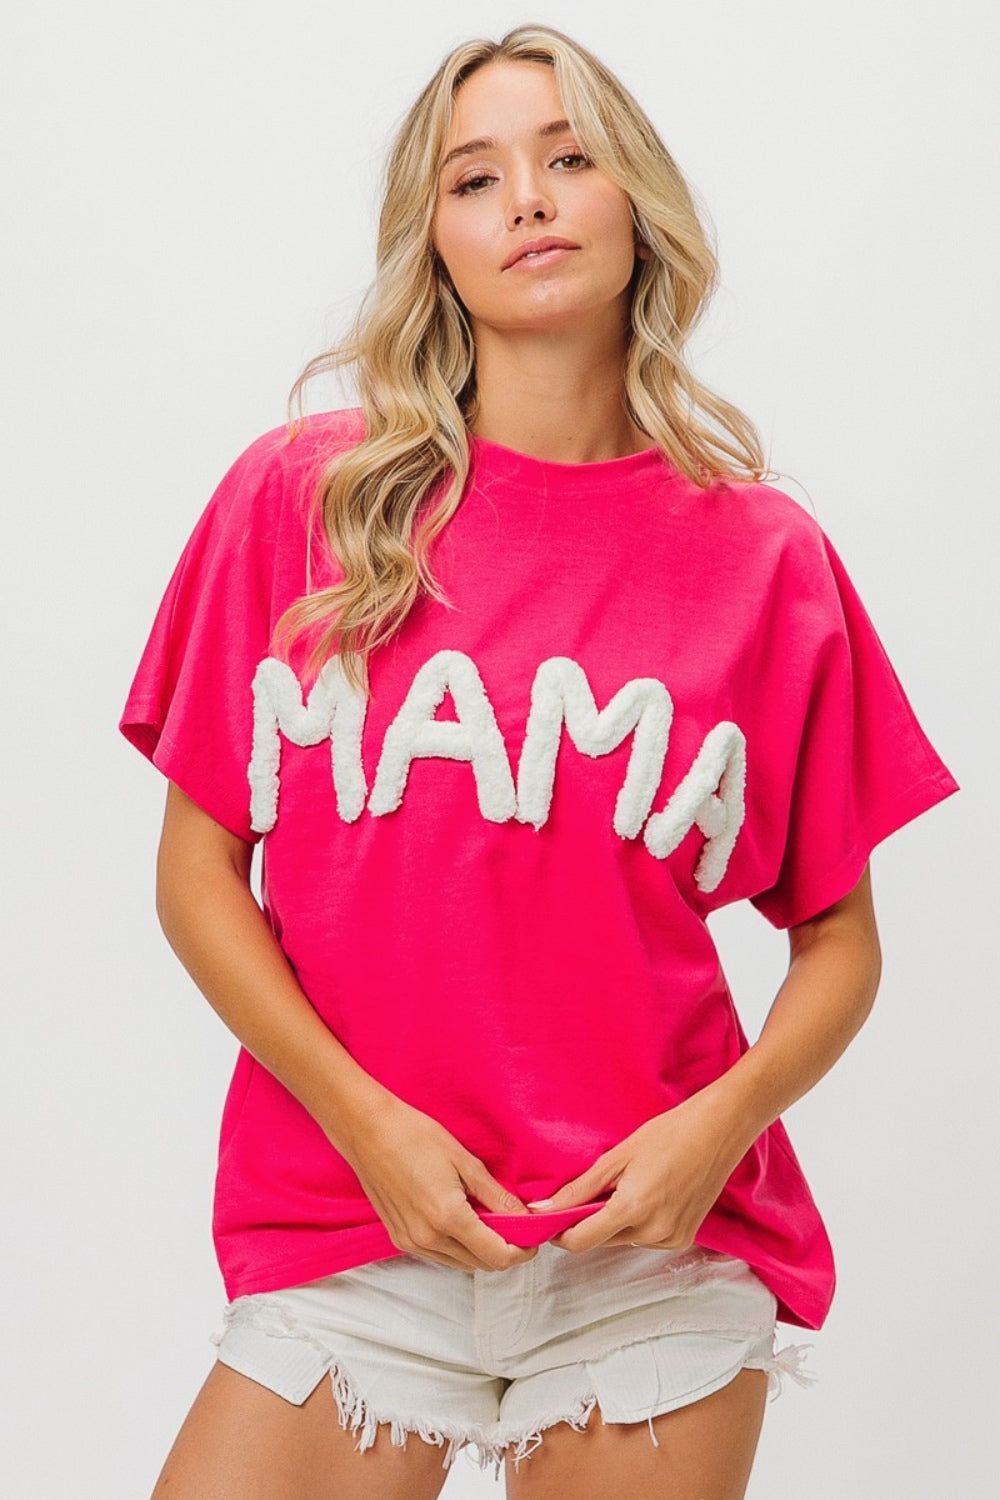 KESLEY Mama Shirt Round Neck Short Sleeve T-Shirt